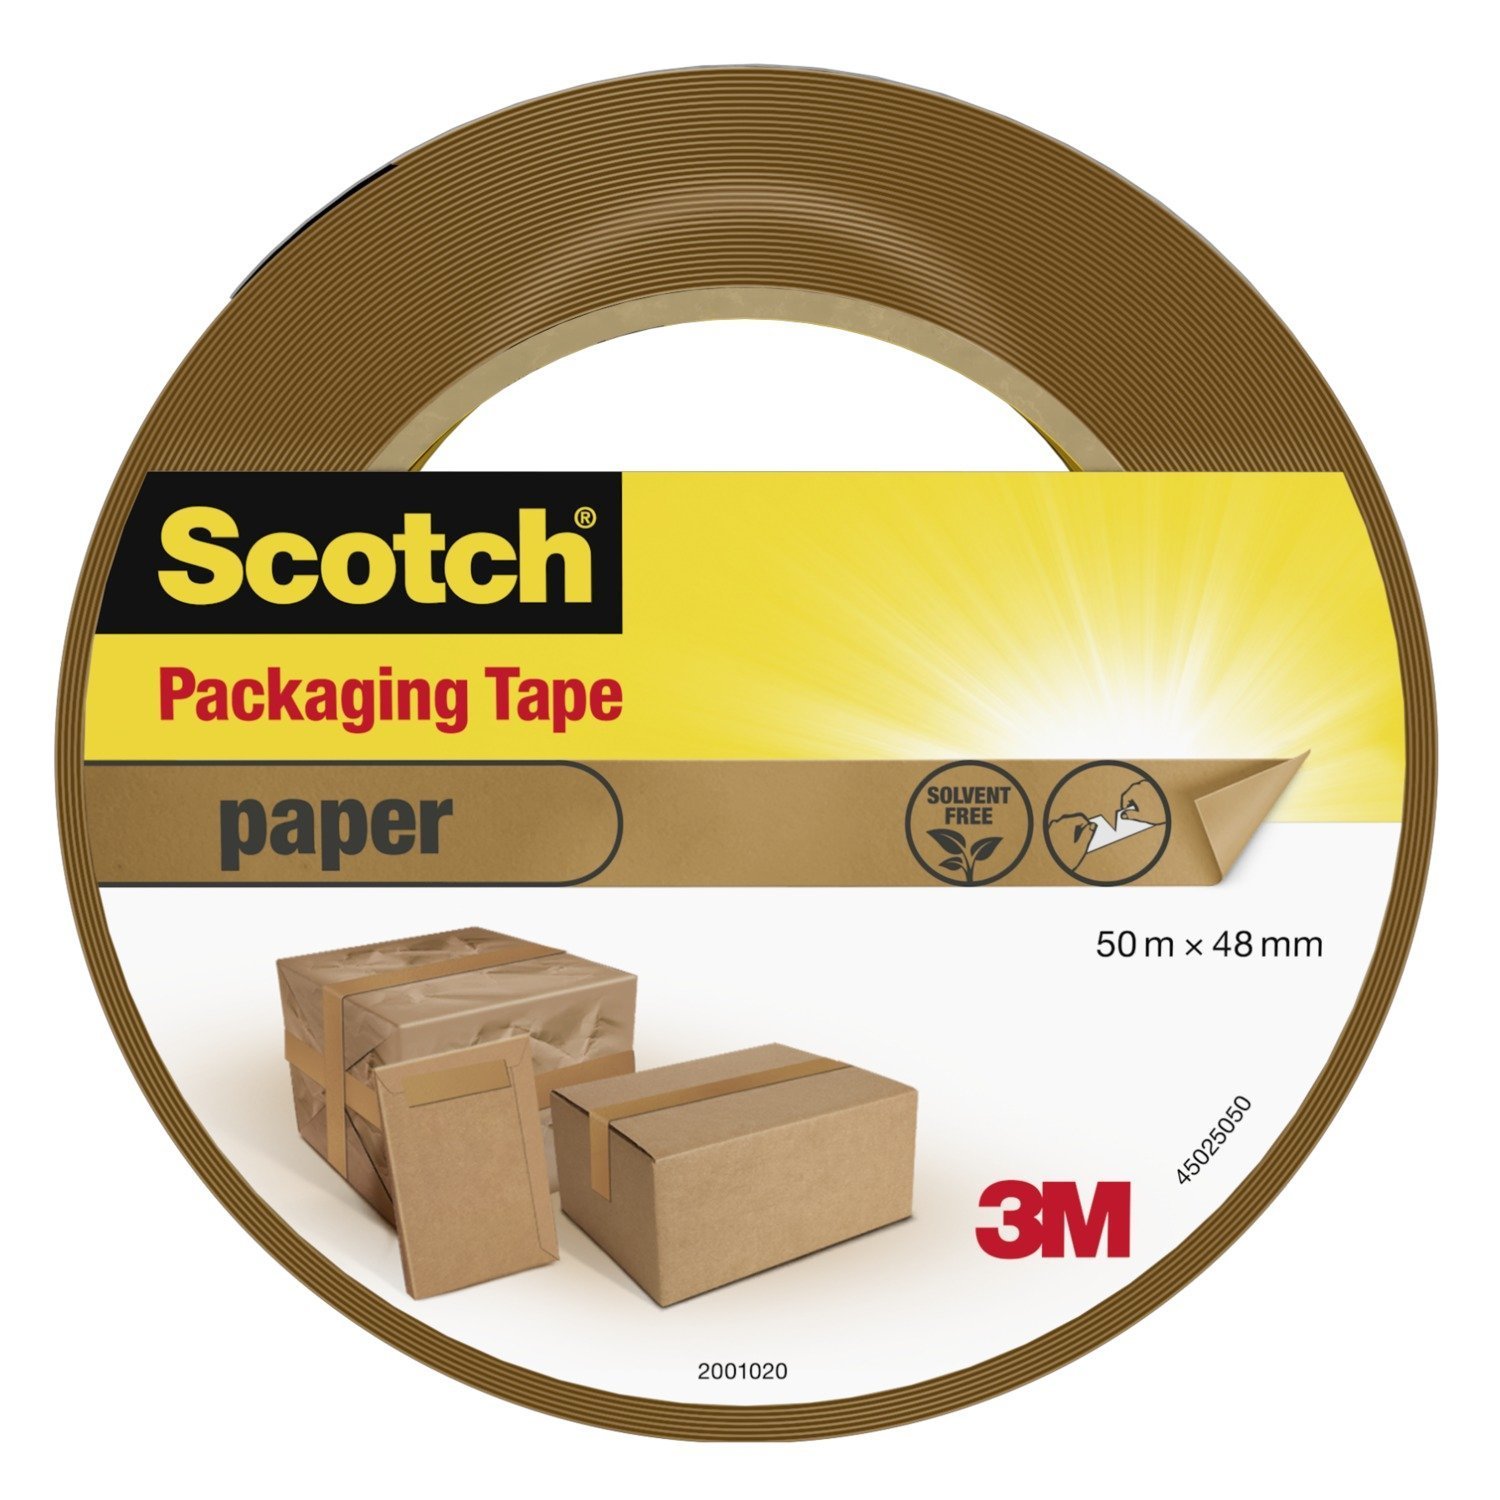 Скотч упаковка lux. Скотч упаковочный полоска. Scotch Packaging Tape. Упаковка paper Tape. Скотч Браун салфетка.